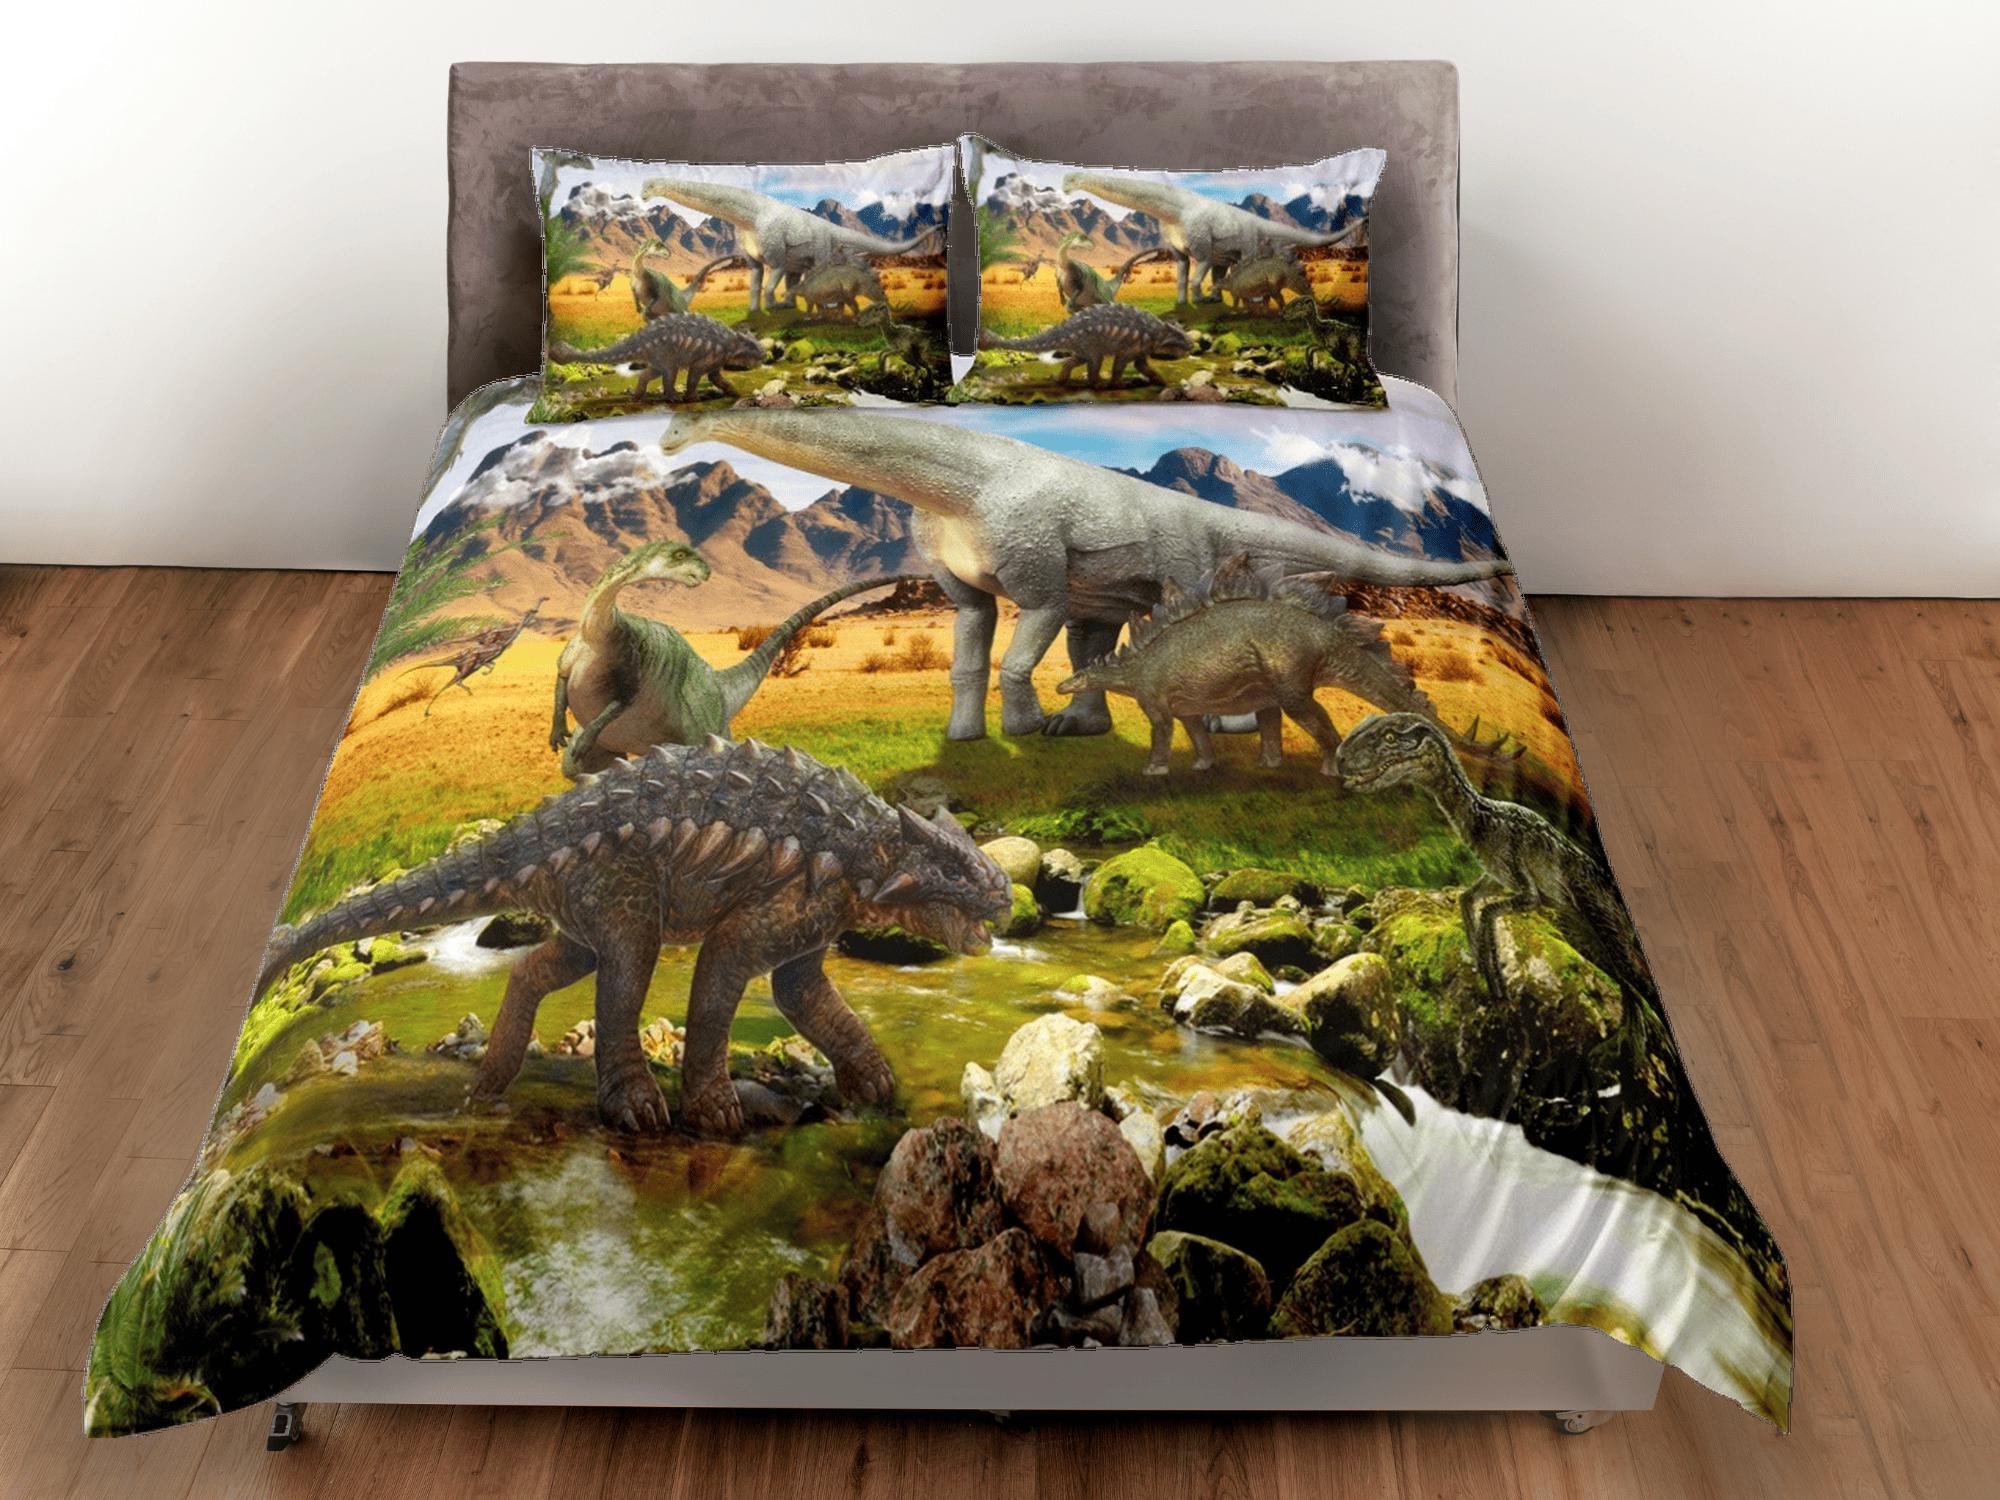 daintyduvet Dinosaur bedding, adult duvet cover, dorm bedding, teen boys bedding set full, animal prints duvet cover set, dinosaur gift, outdoor scenery